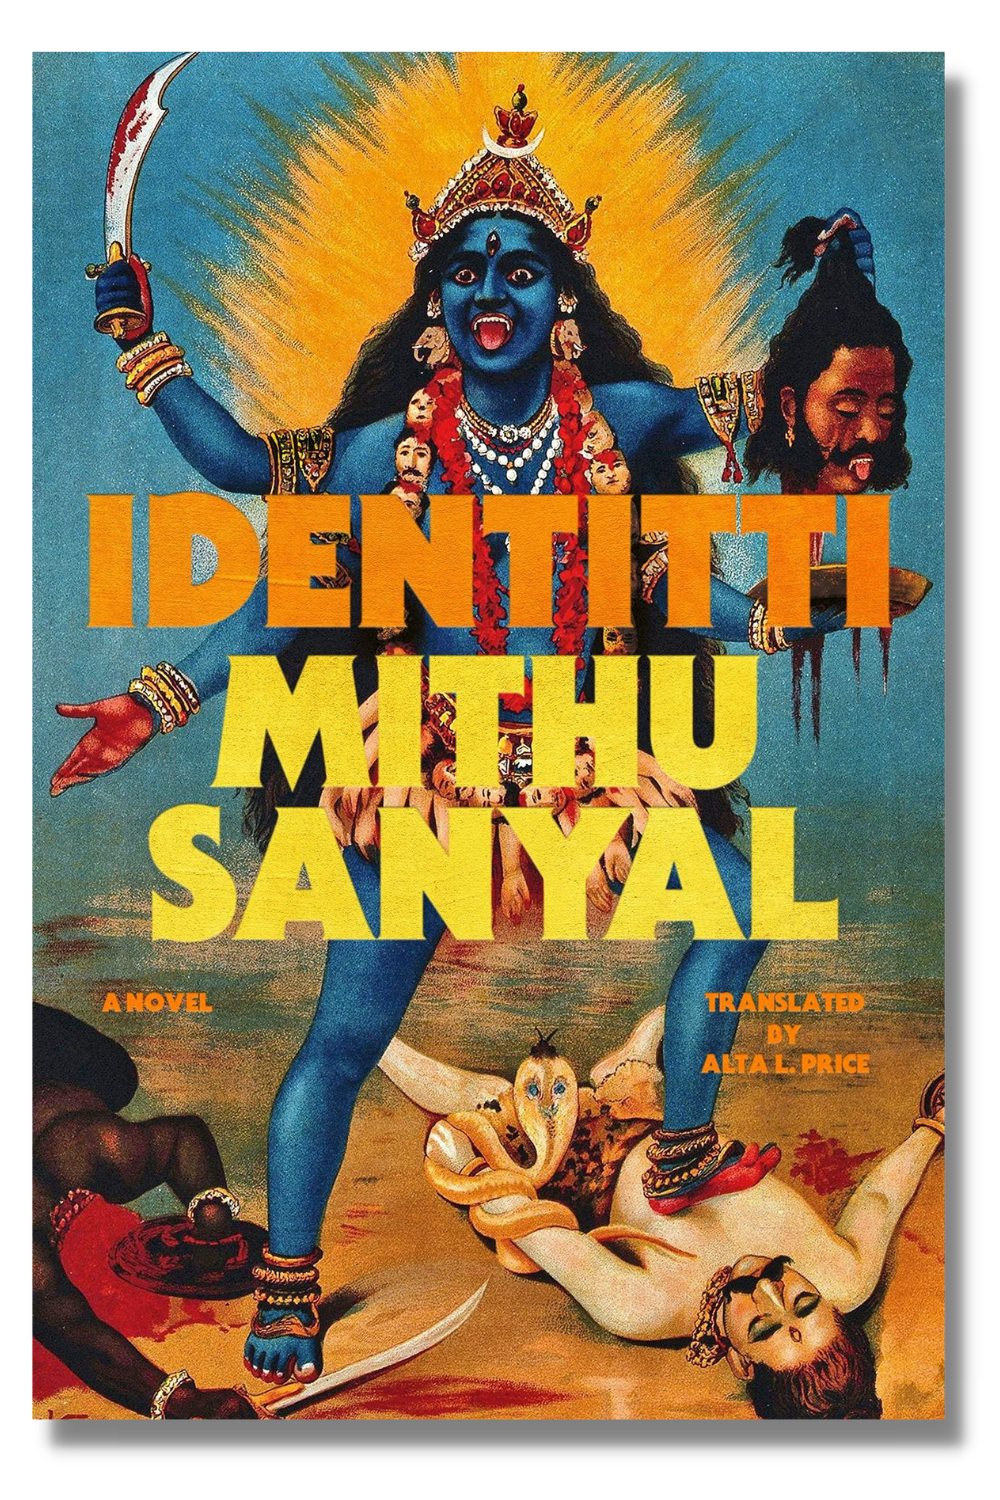 The cover of "Identitti"